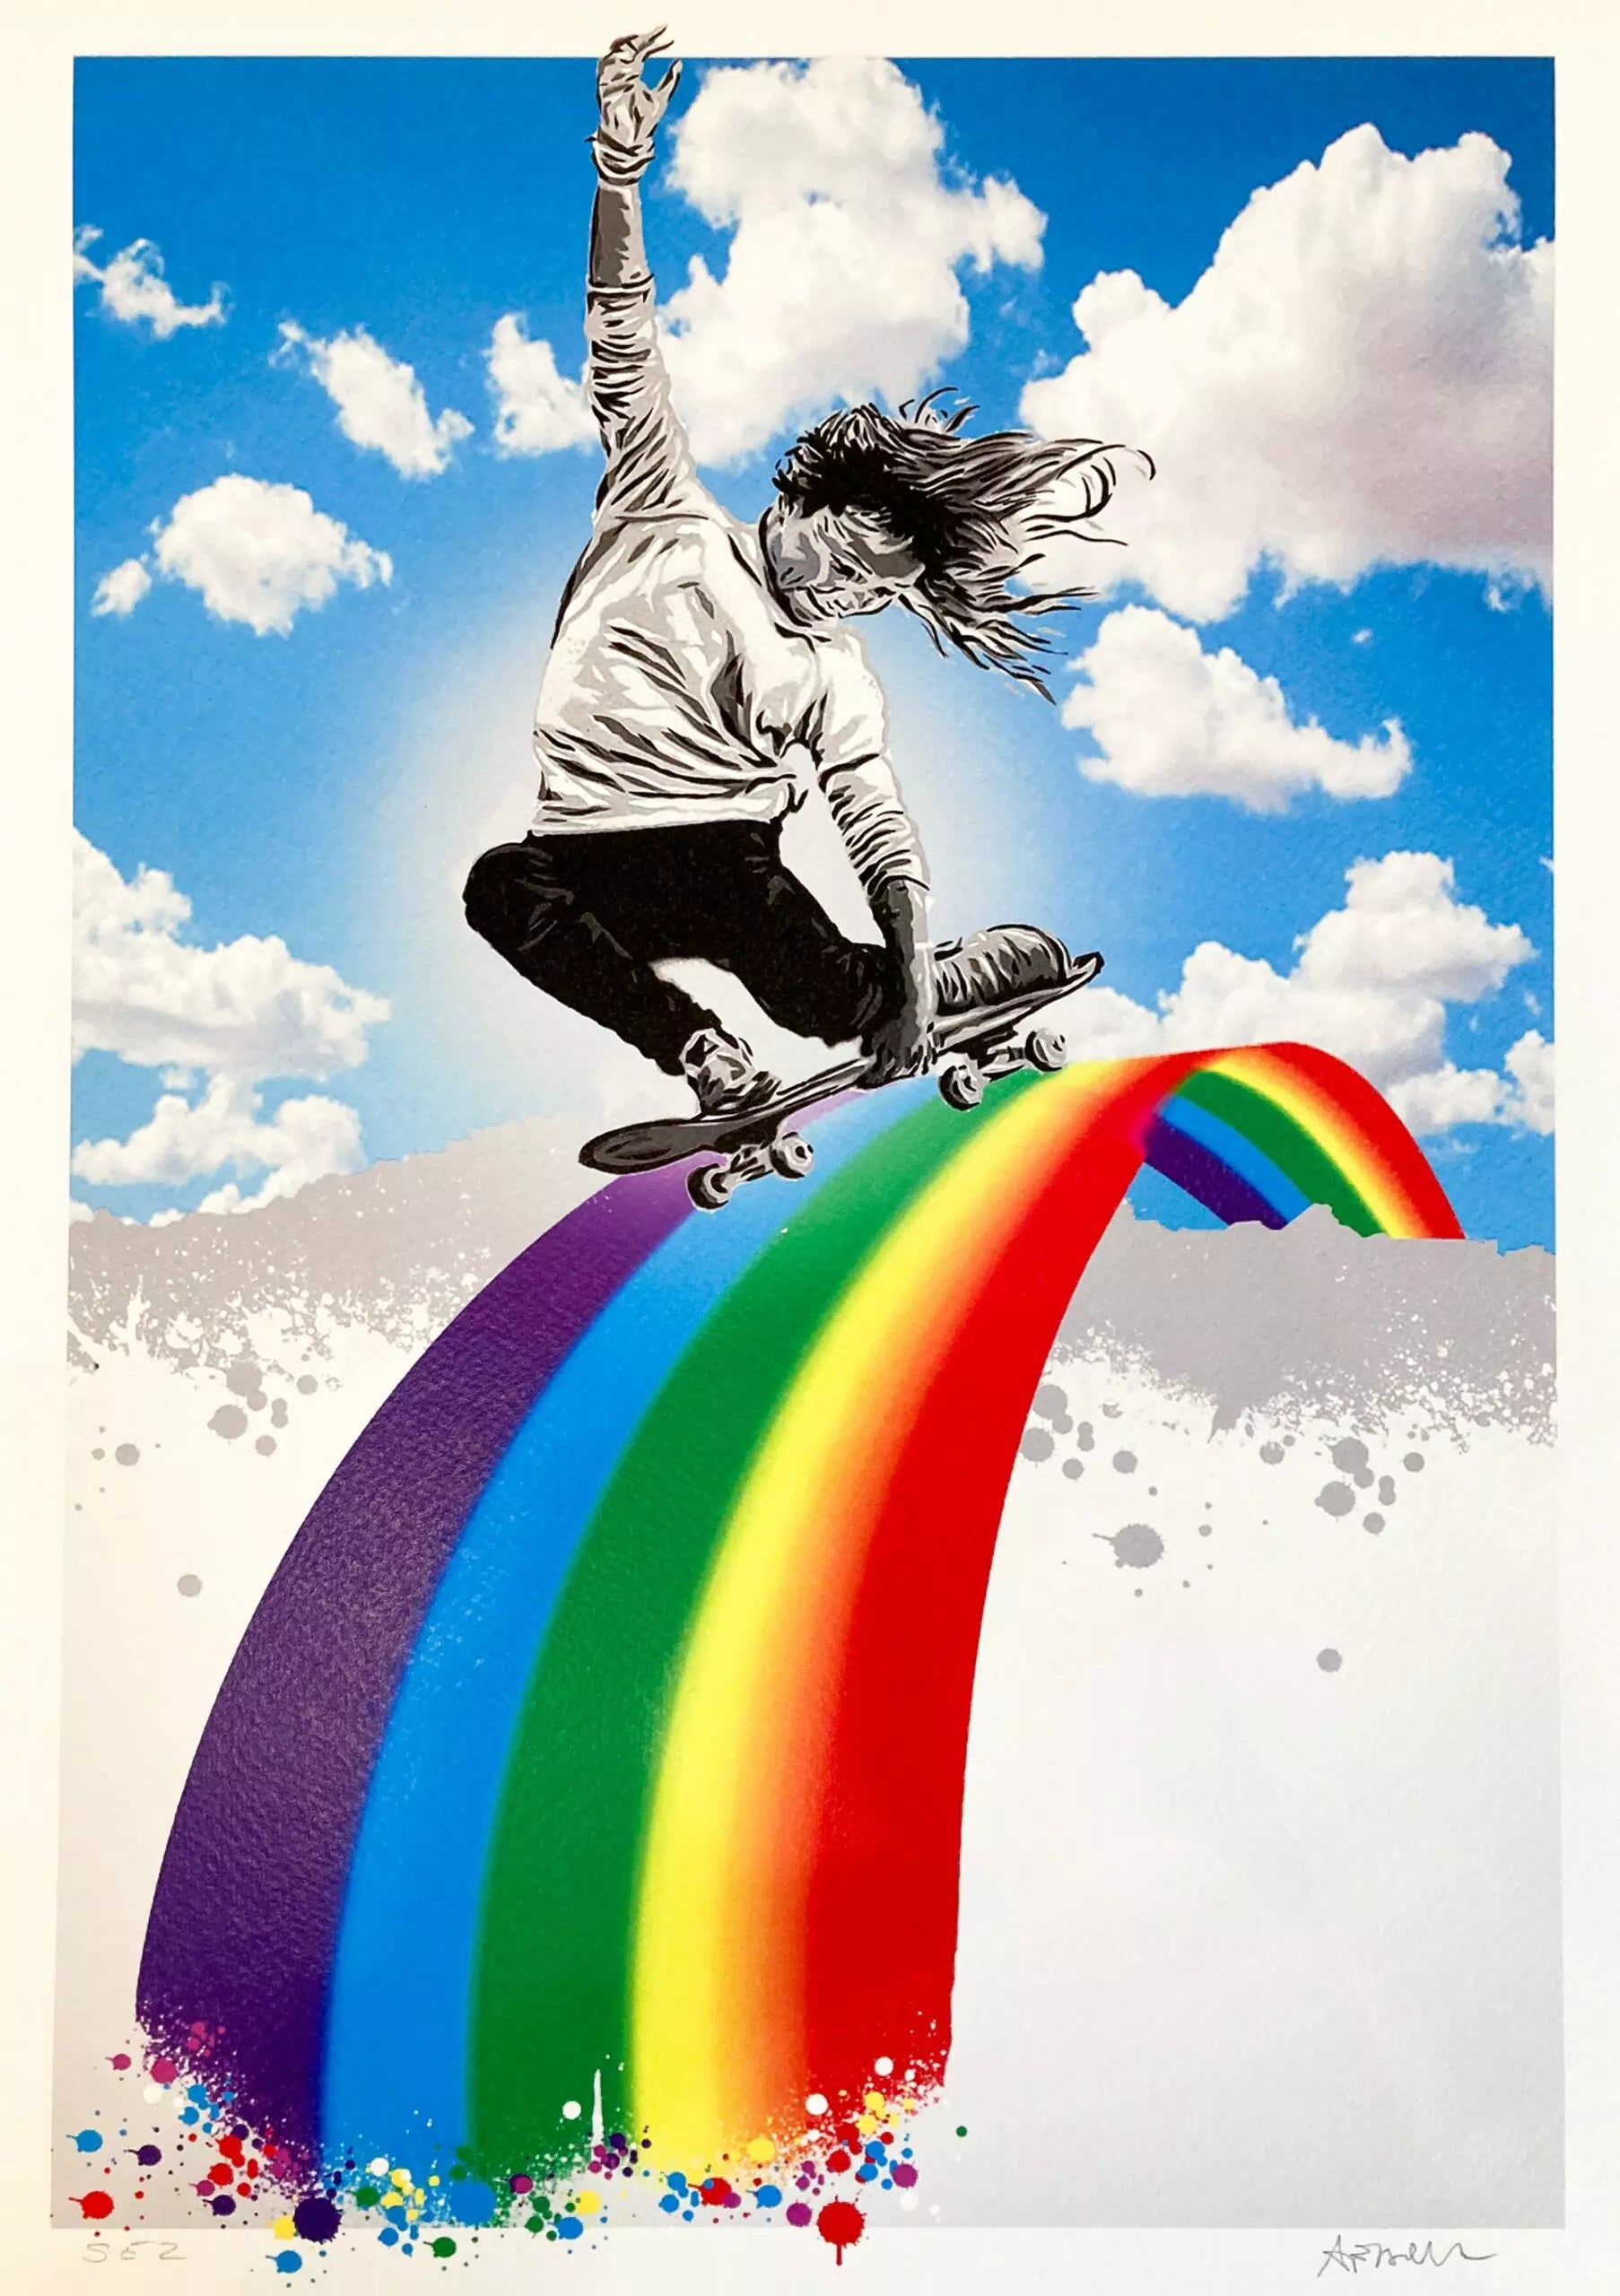 Skate Rainbow Edition di Alessio-B. Stampa giclée stampa giclée su carta 320 gsm edizione limitata rappresentante un bambino che va su uno skate sopra ad una strada a forma di arcobaleno | Cd Studio d'Arte